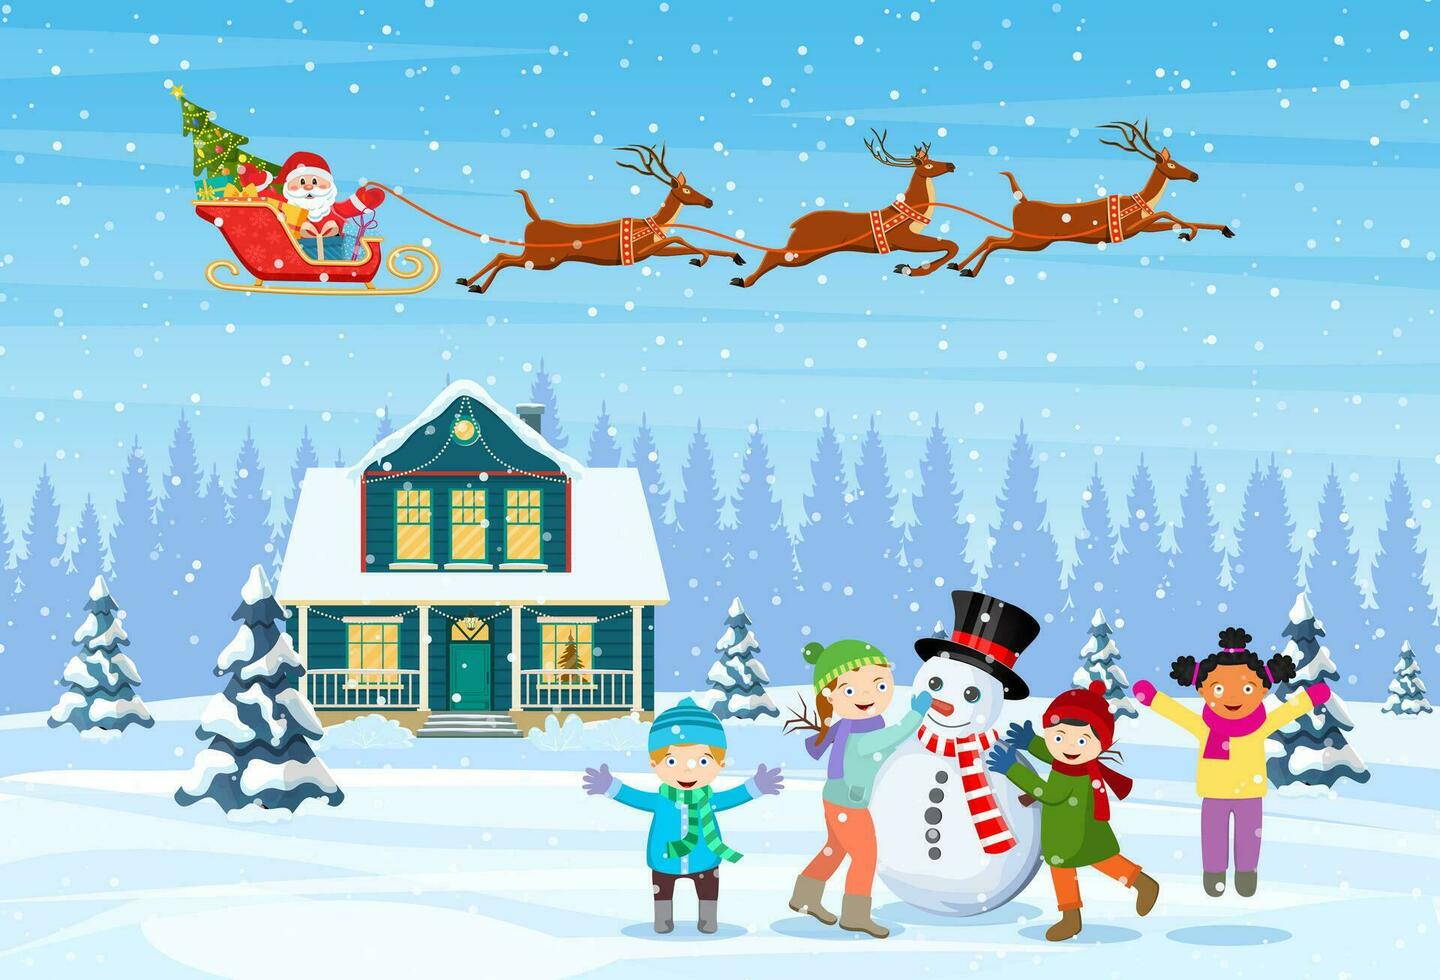 contento nuevo año y alegre Navidad saludo tarjeta. Navidad paisaje. niños edificio muñeco de nieve. invierno vacaciones. Papa Noel claus con ciervos en cielo. vector ilustración en plano estilo